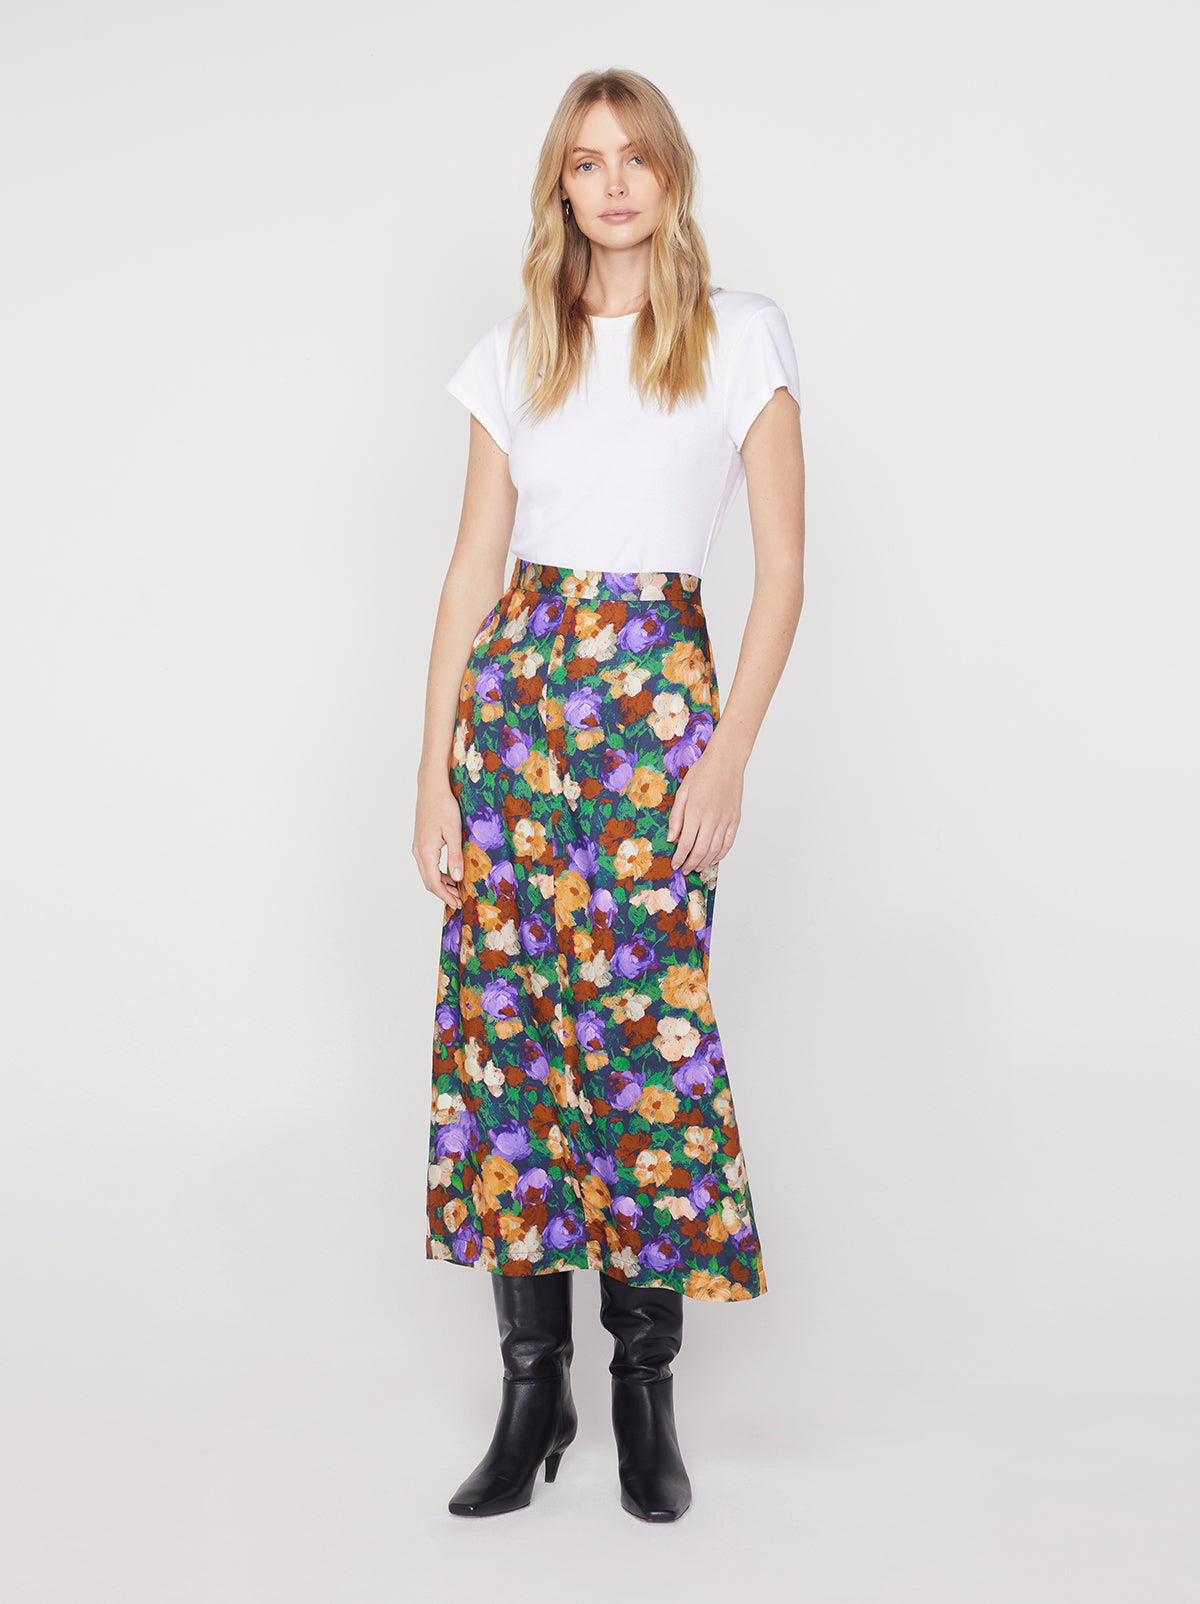 Laurel Iris Impressionist Floral Skirt | KITRI Studio